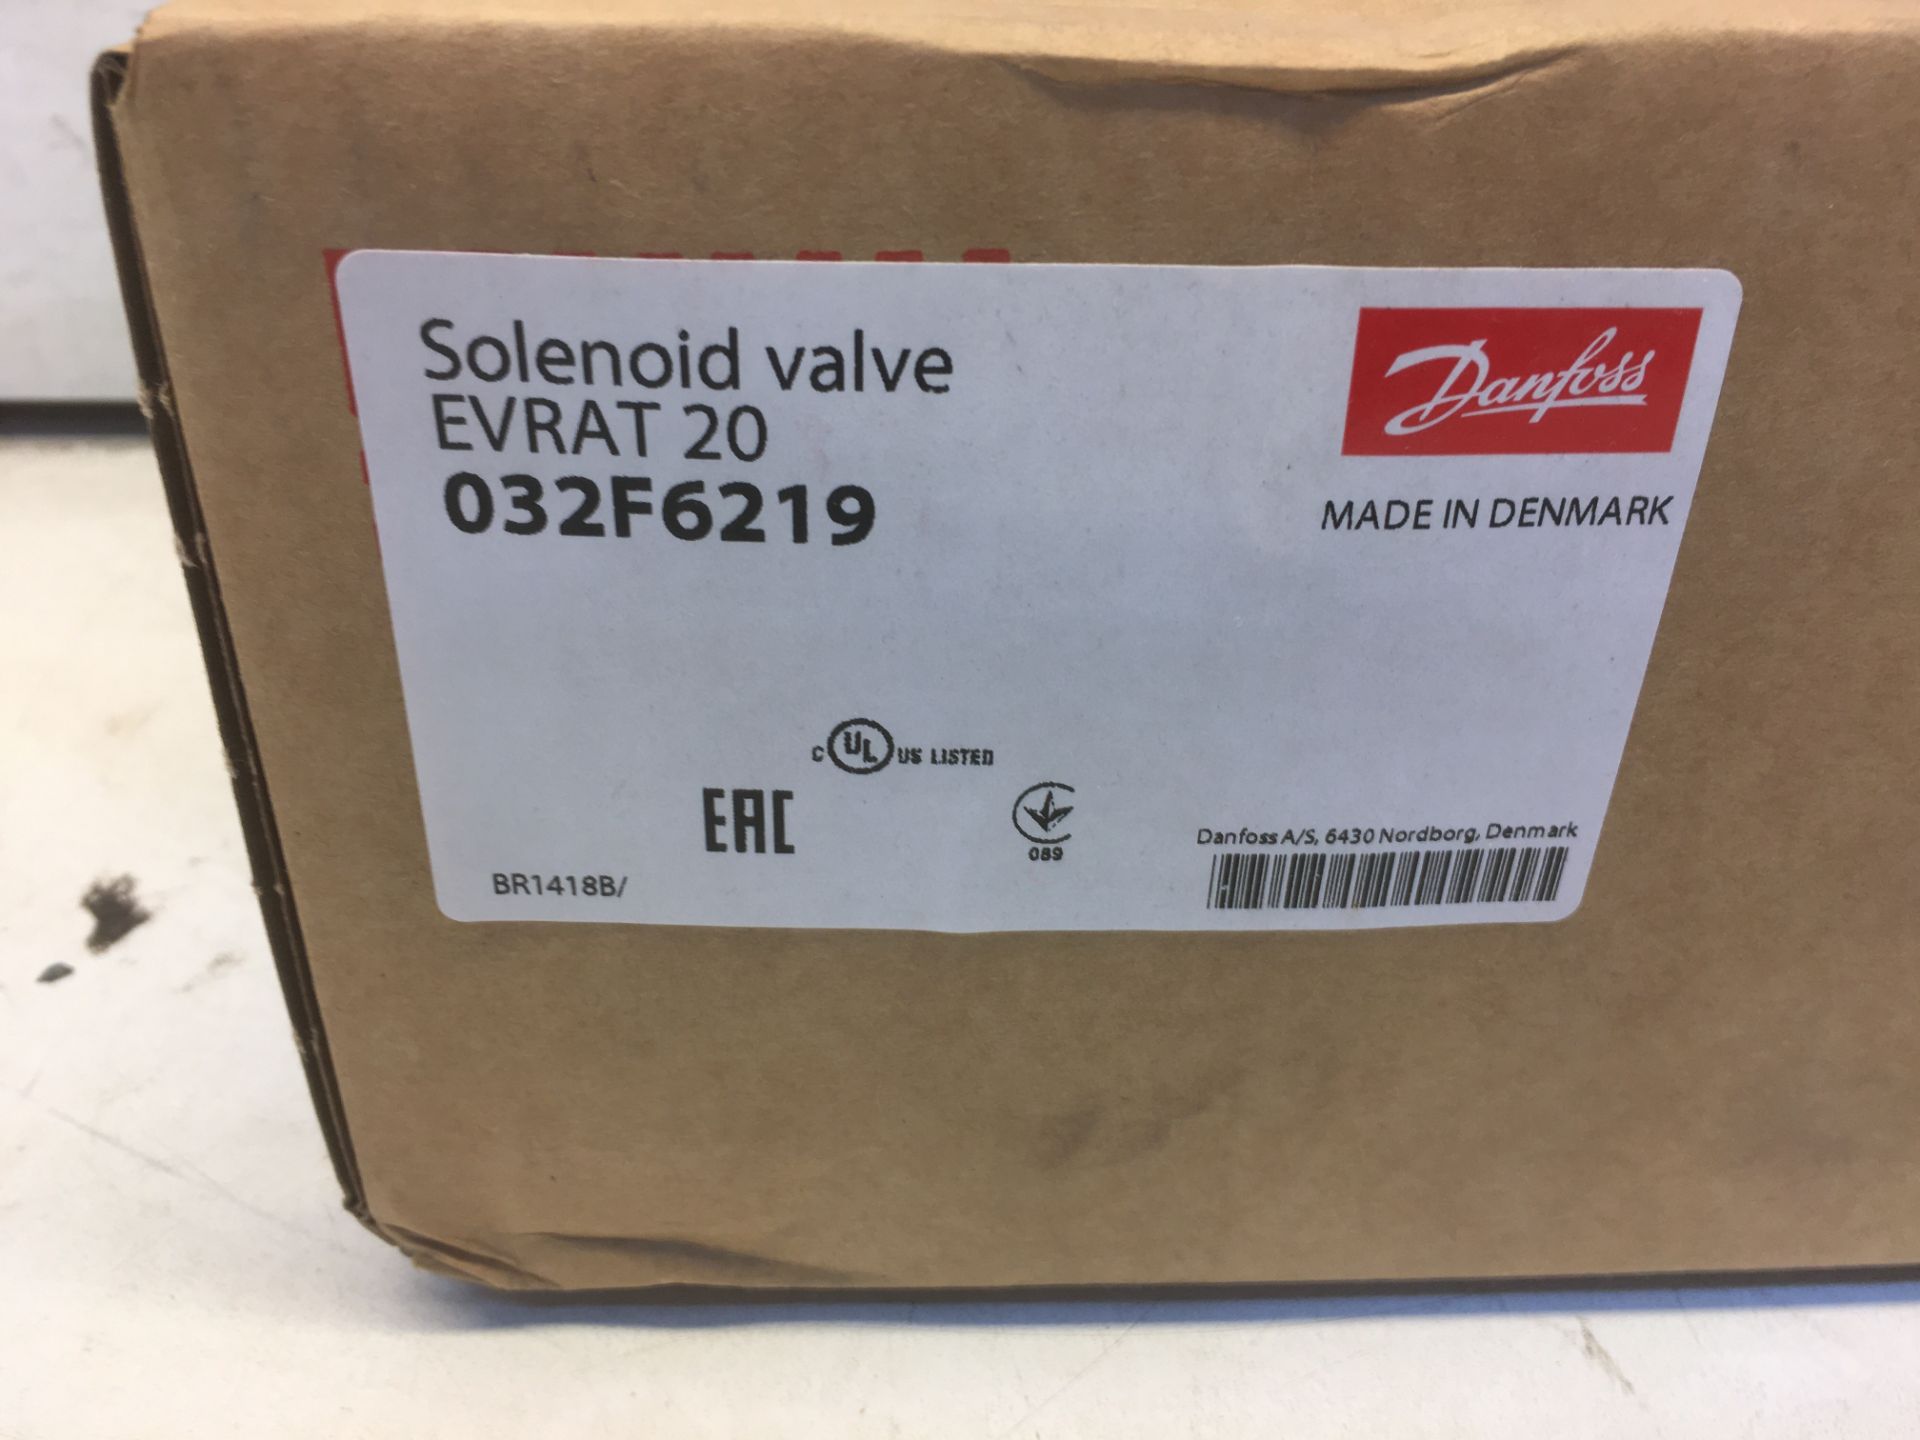 Danfoss EVRAT 20 Solenoid Valve